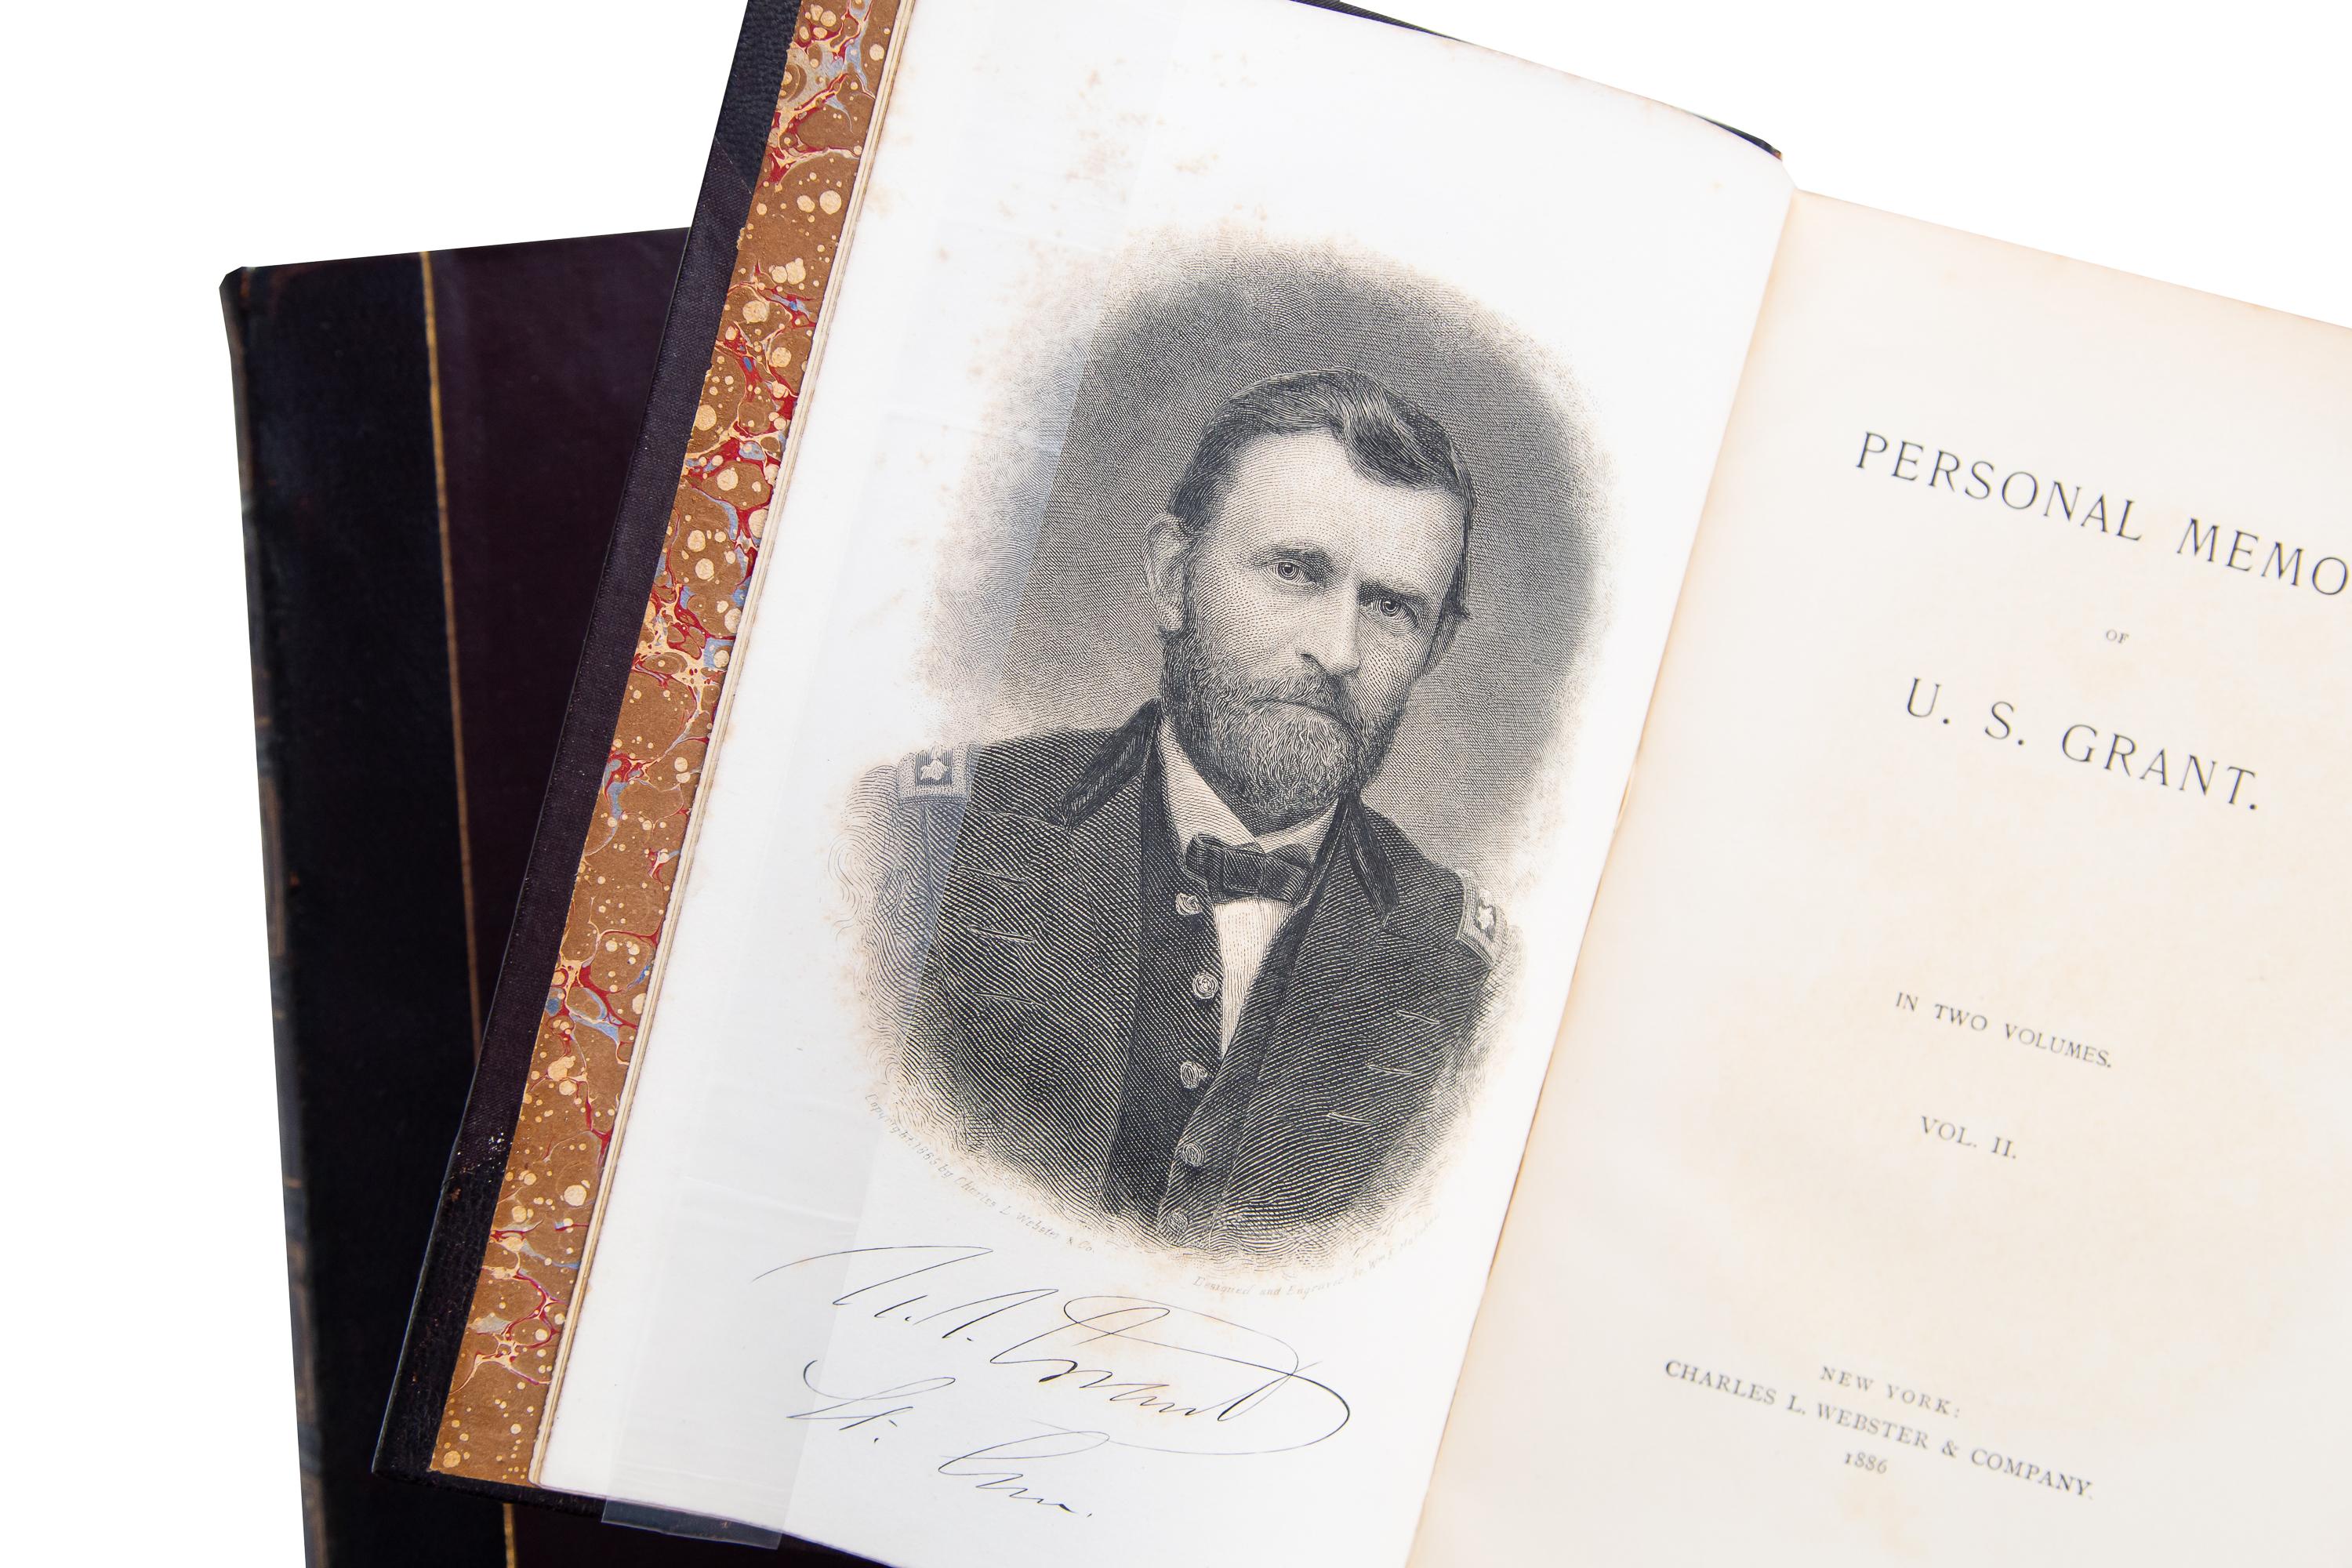 2 Volumes, U.S. Grant, Personal Memoirs 1